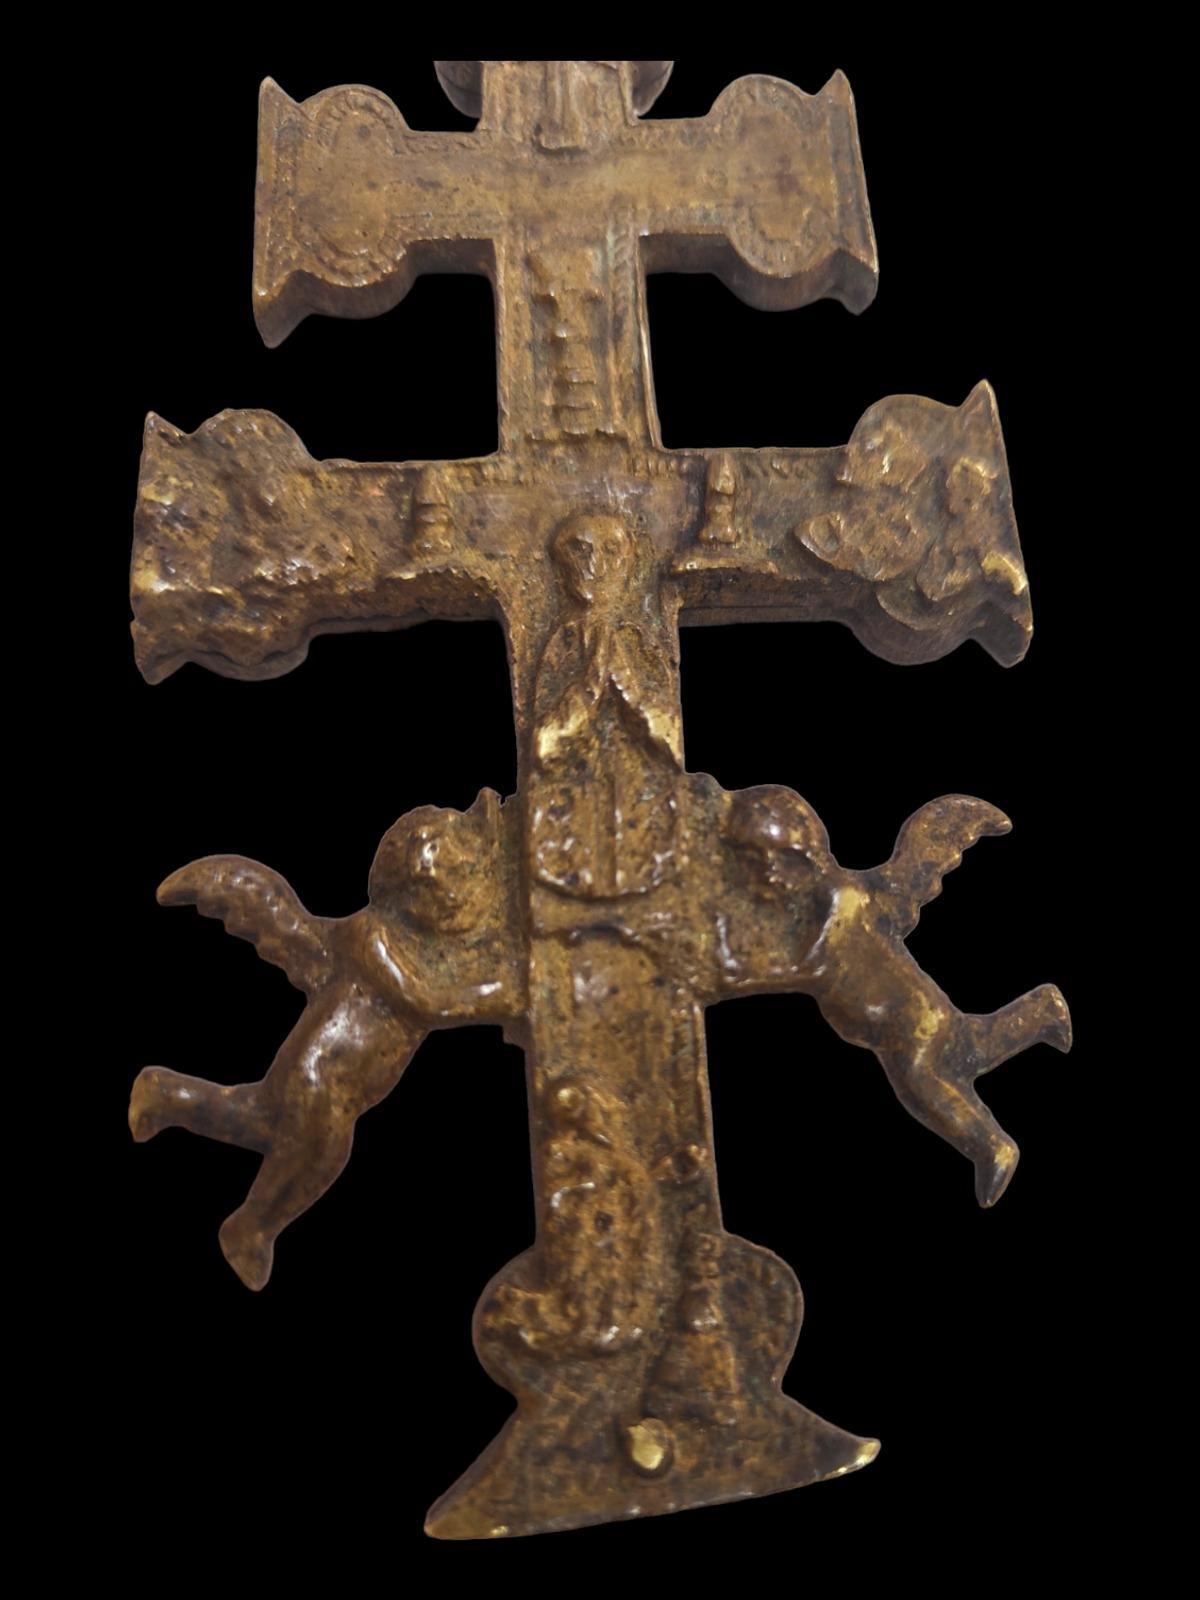 Kreuz von caravaca XVII Jahrhundert.
Sehr schönes Kreuz von Caravaca aus Bronze. 17. Jahrhundert. Abmessungen: 14X6 cm.
Guter Zustand.